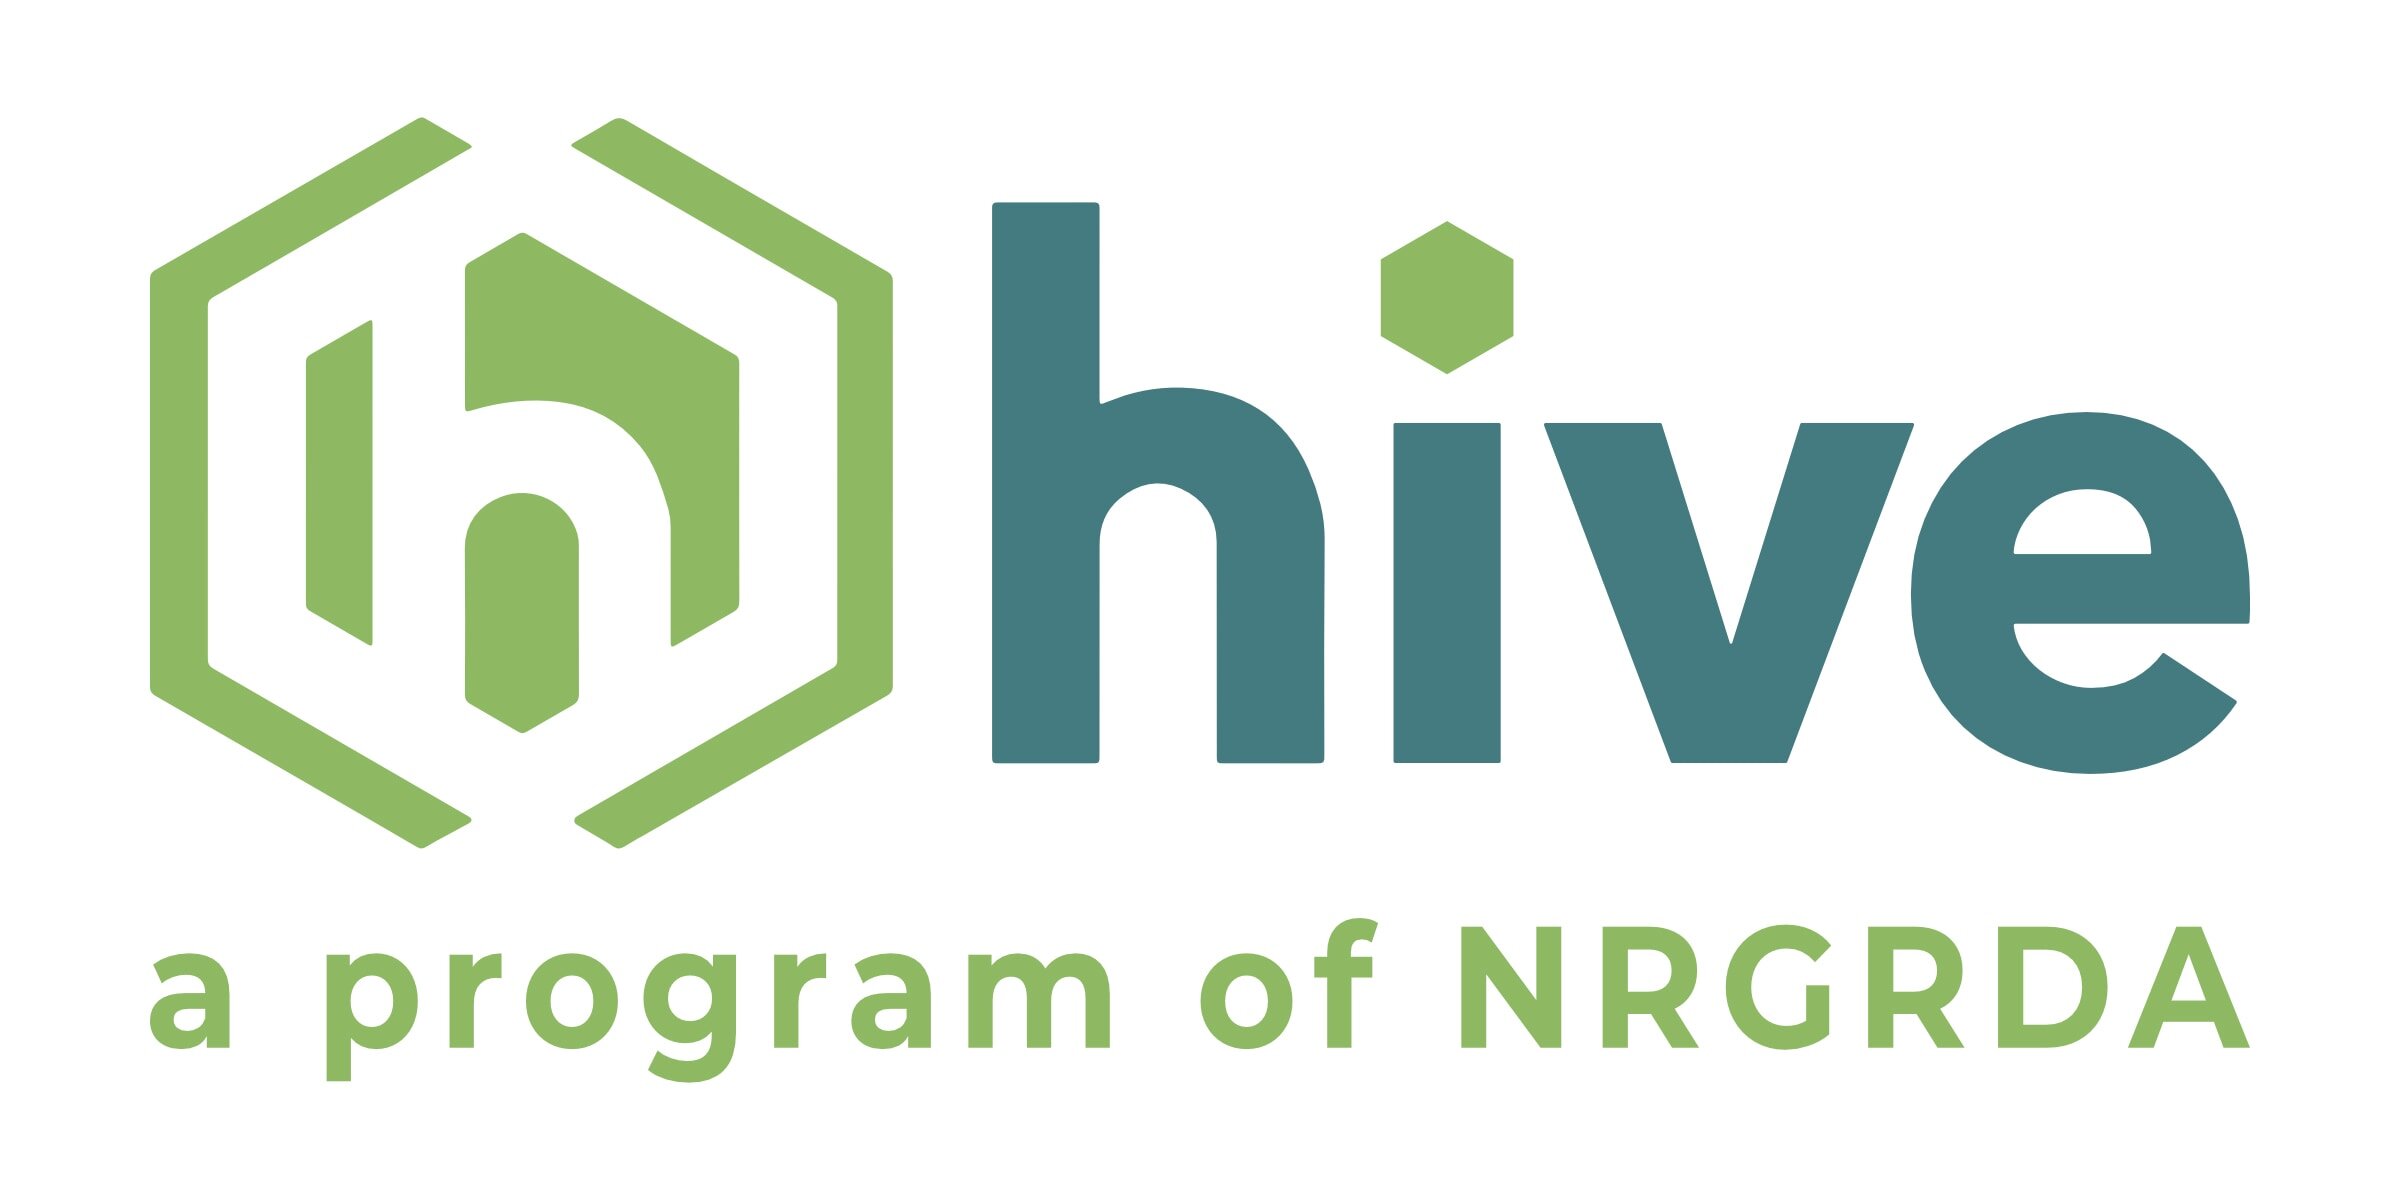 WVHive-Logo-2020-2-Color-NRGRDA.jpg